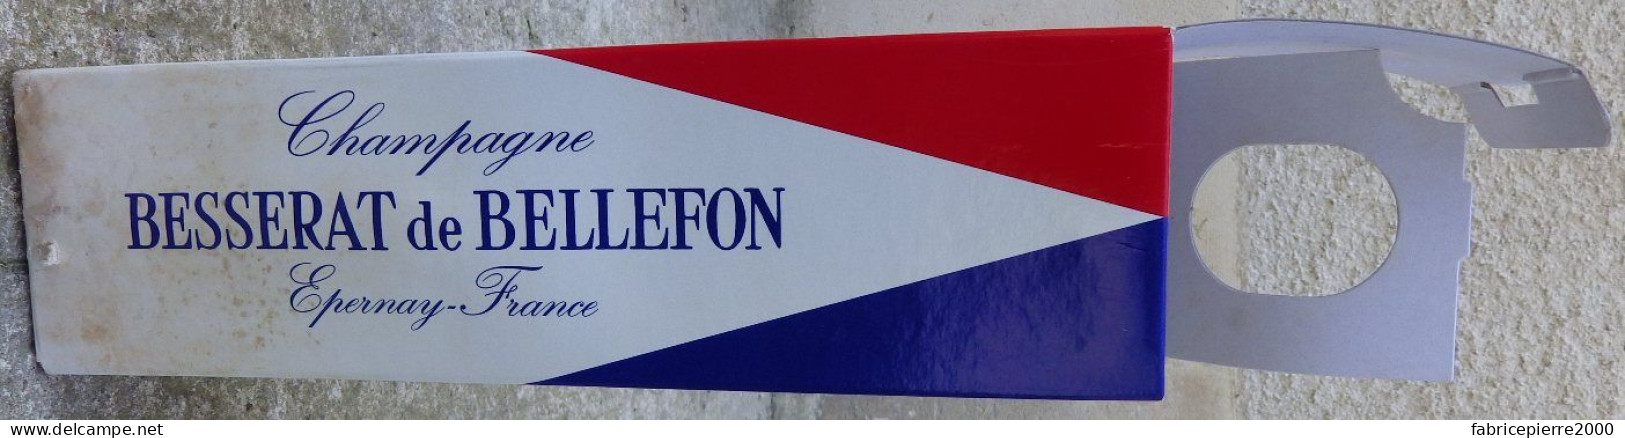 CHAMPAGNE 50 ans Libération de PARIS avec étui, BESSERAT DE BELLEFON 10 photos, bouteille pleine + 4 étiquettes